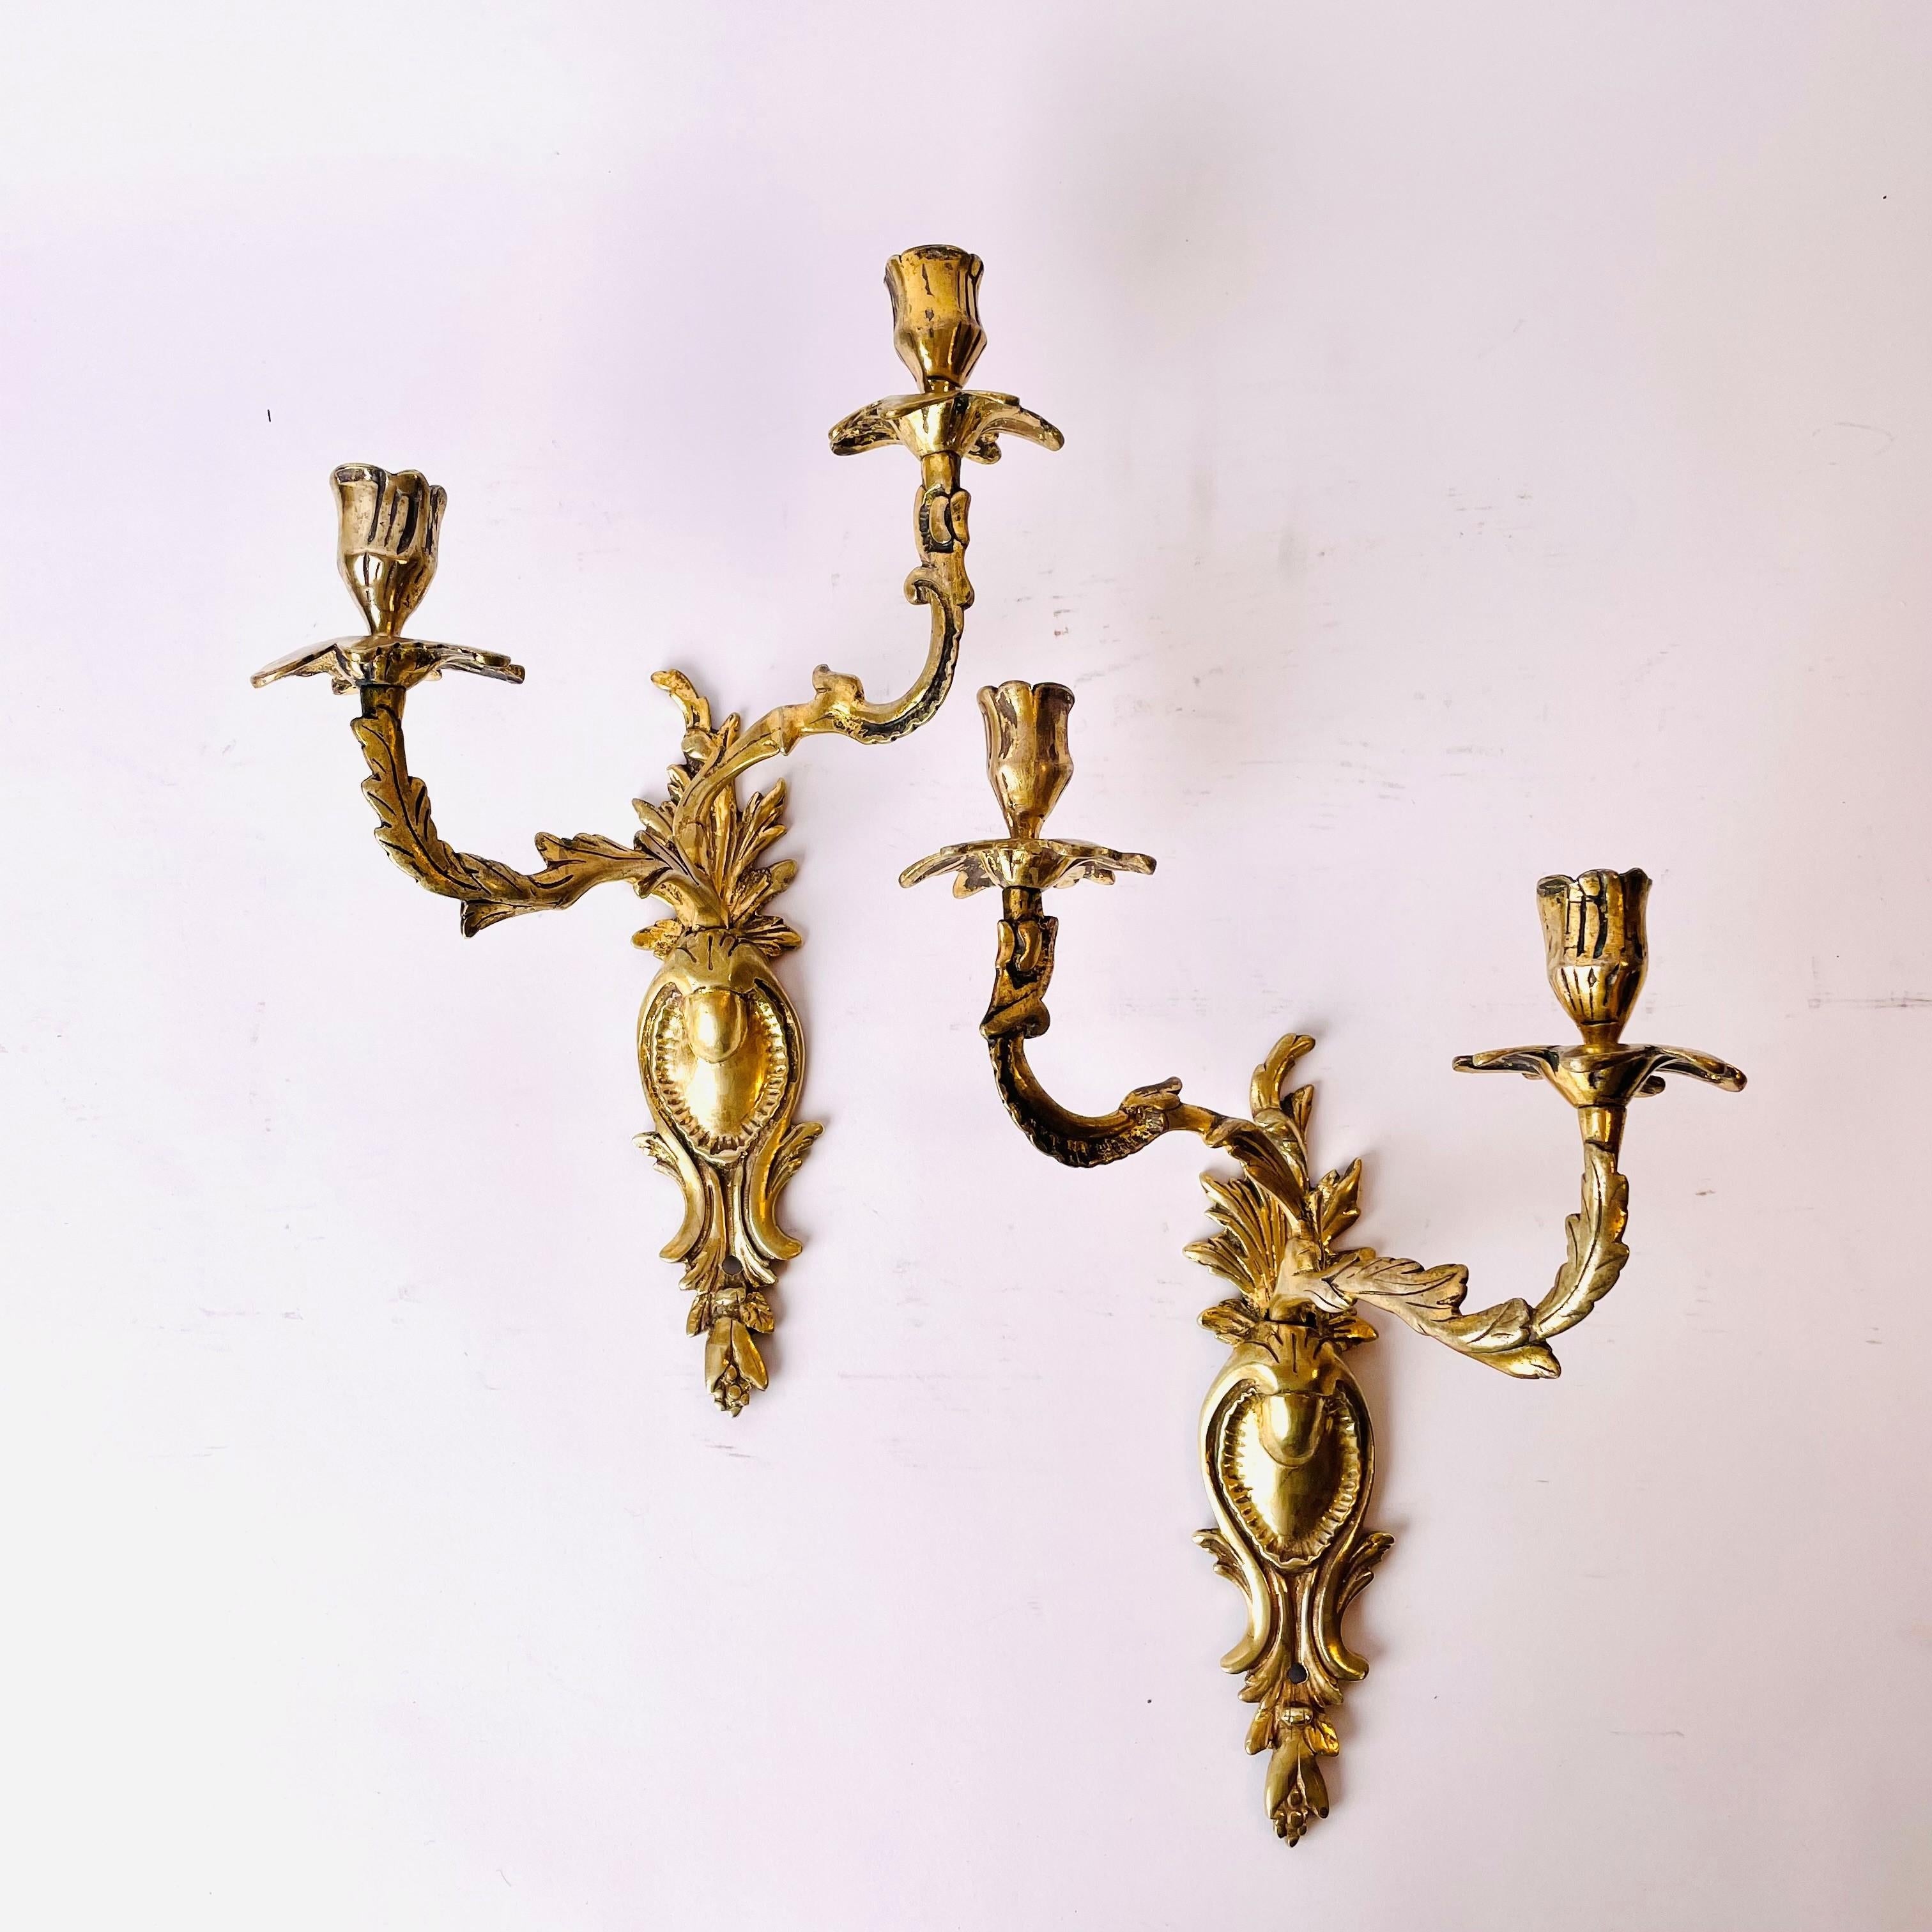 Ein schönes Paar Appliques aus vergoldeter Bronze, Rokoko aus der Mitte des 18. Jahrhunderts.

Die ursprüngliche Vergoldung ist etwas abgenutzt (siehe Bilder), aber der Gesamteindruck dieser 270 Jahre alten Applikationen ist, dass sie eine schöne